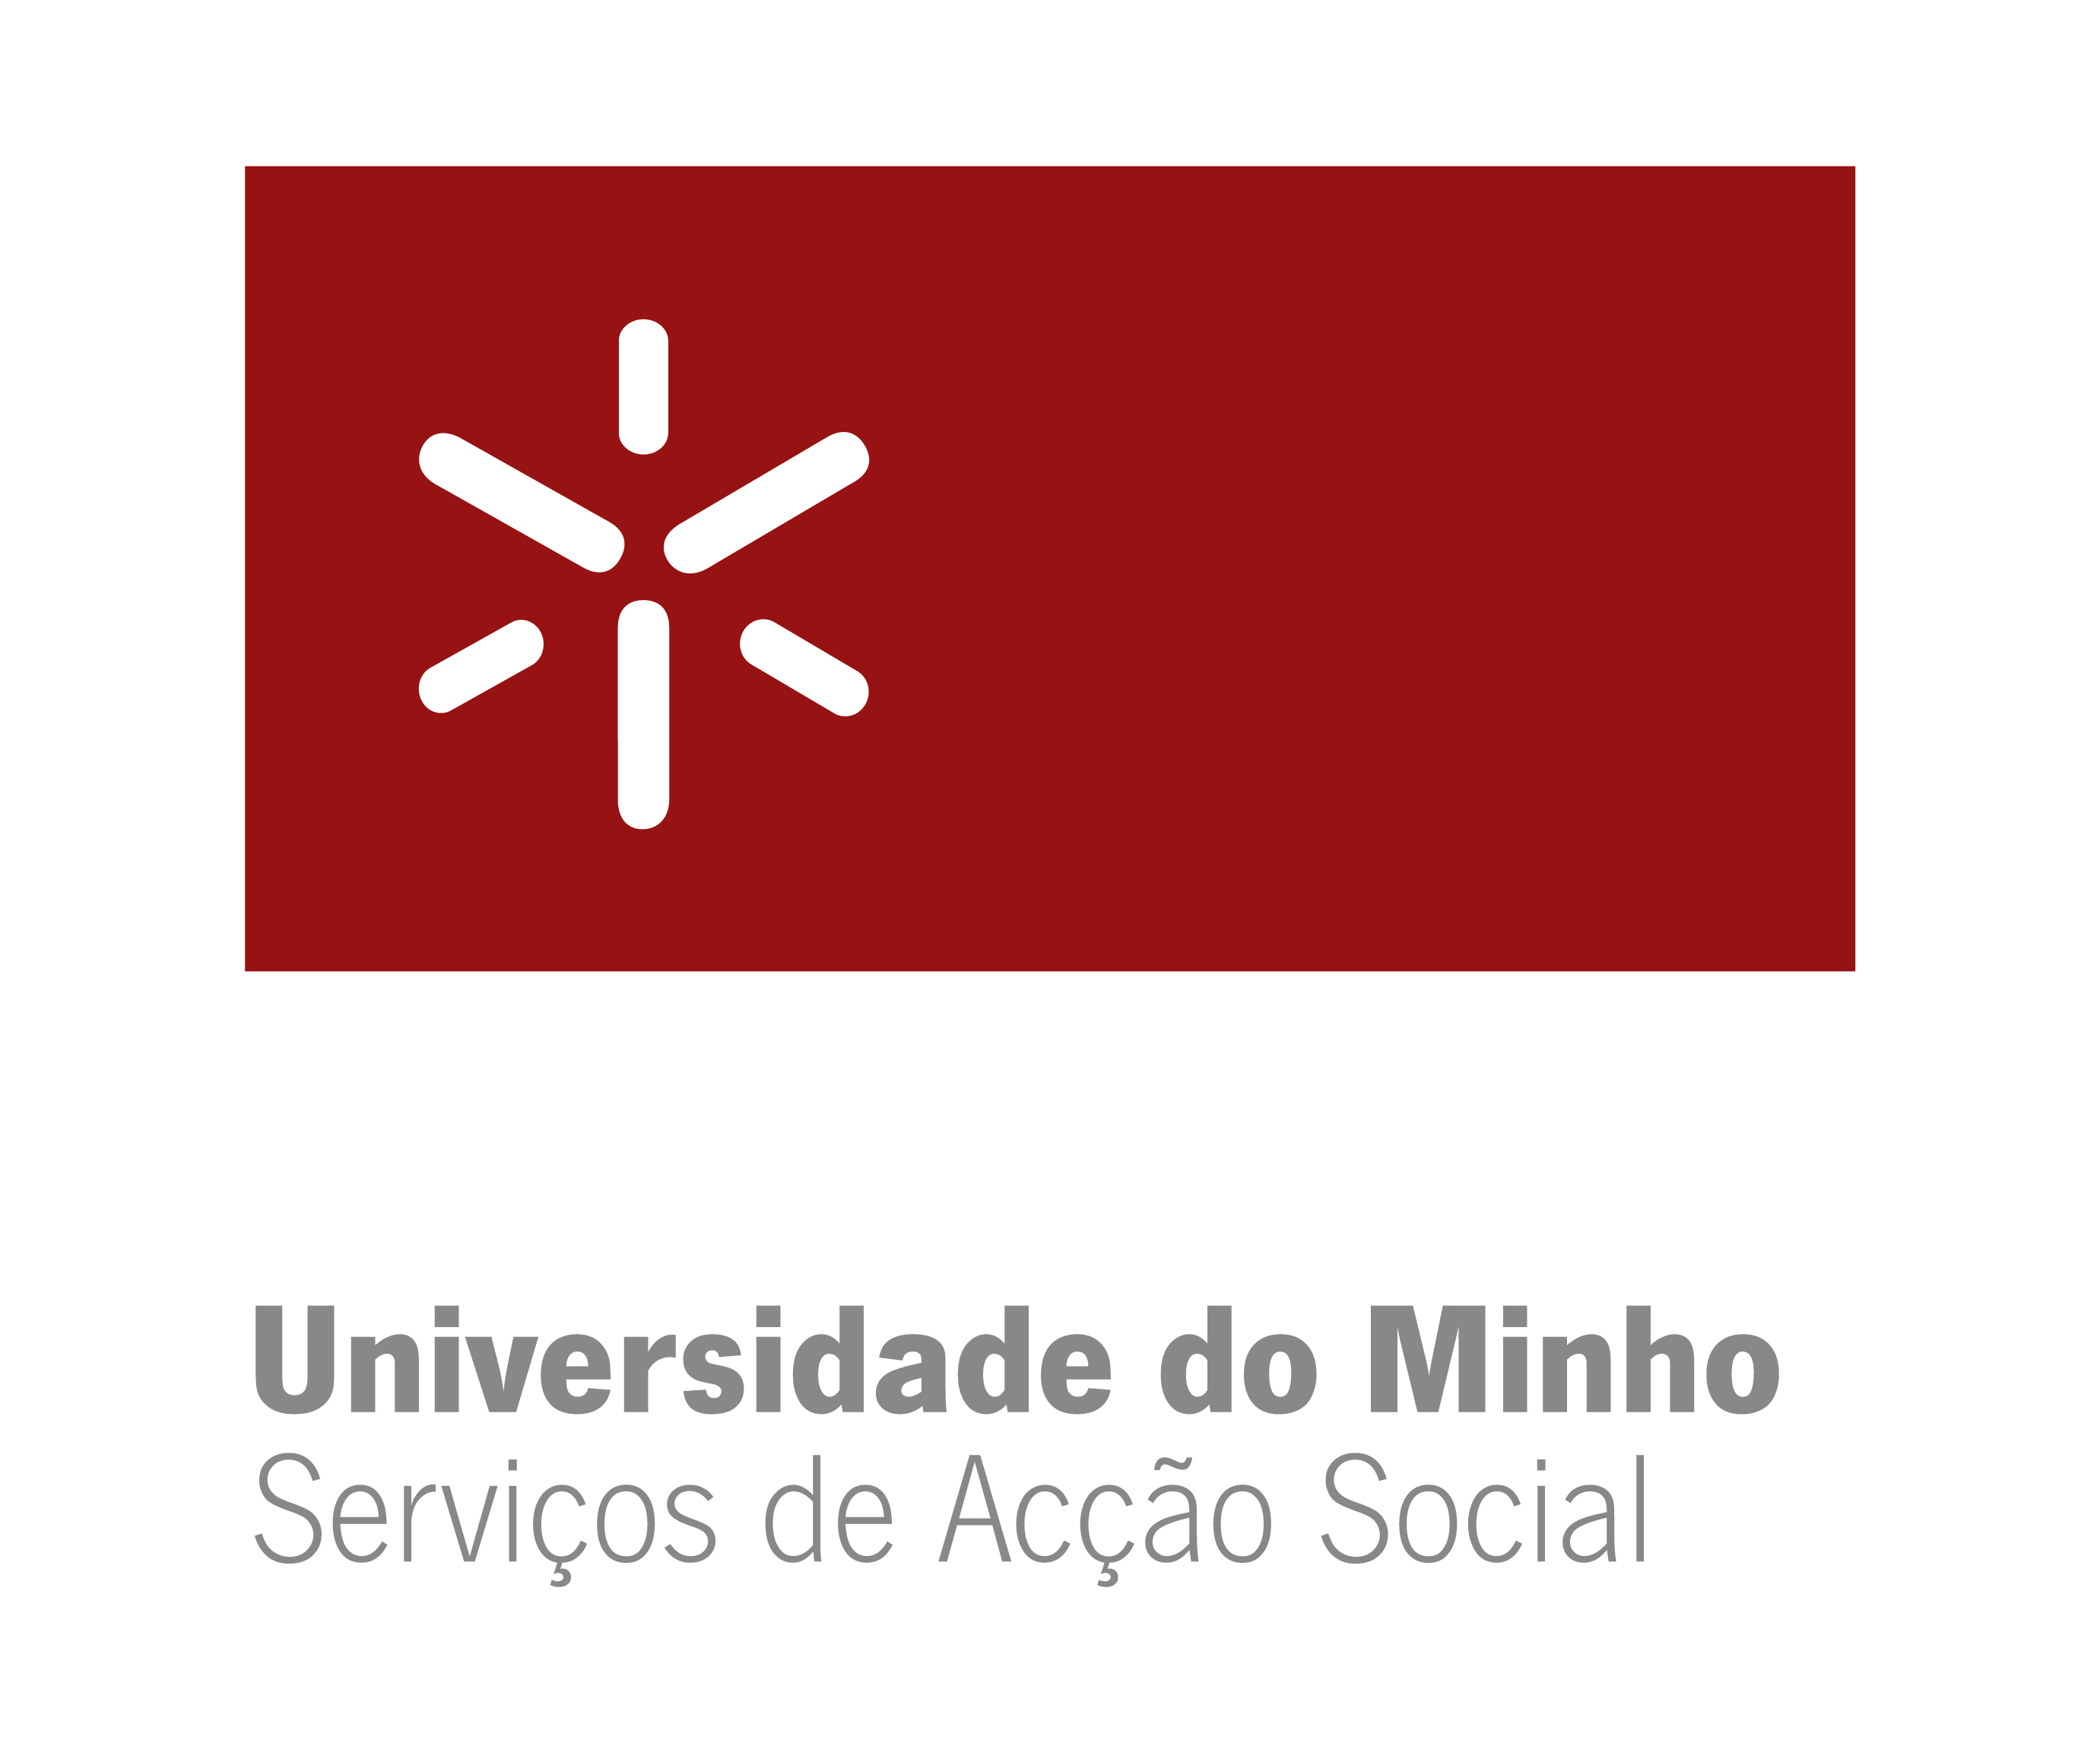 Departamento de Desporto e Cultura dos Serviços de Acção Social da Universidade do Minho